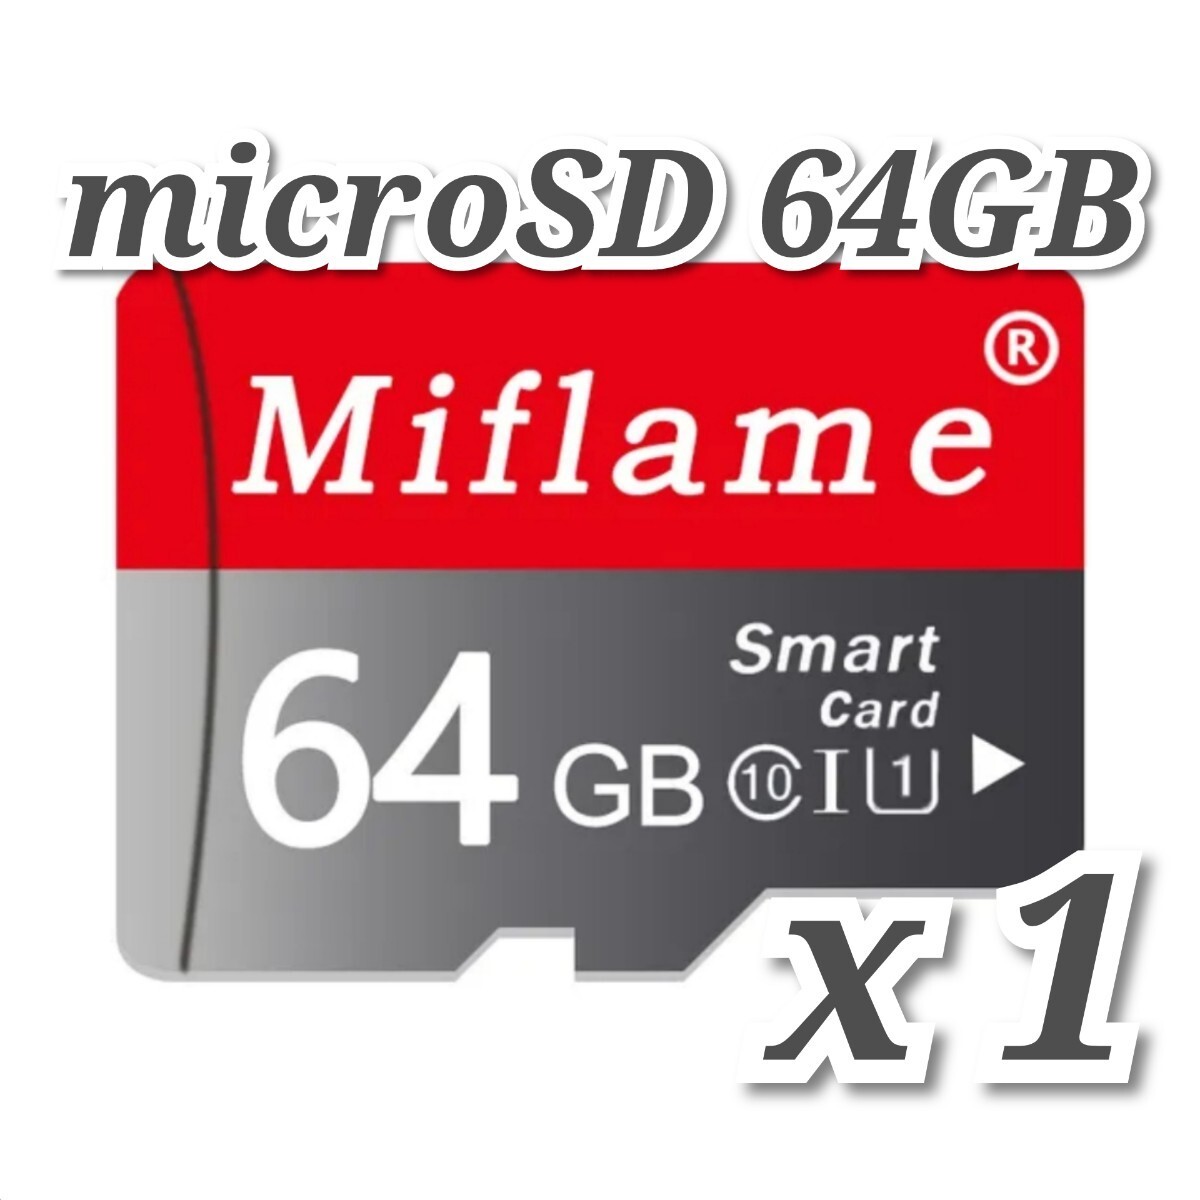 【送料無料】マイクロSDカード 64GB 1枚 class10 1個 microSD microSDXC マイクロSD 高速 MIFLAME 64GB RED-GRAYの画像2